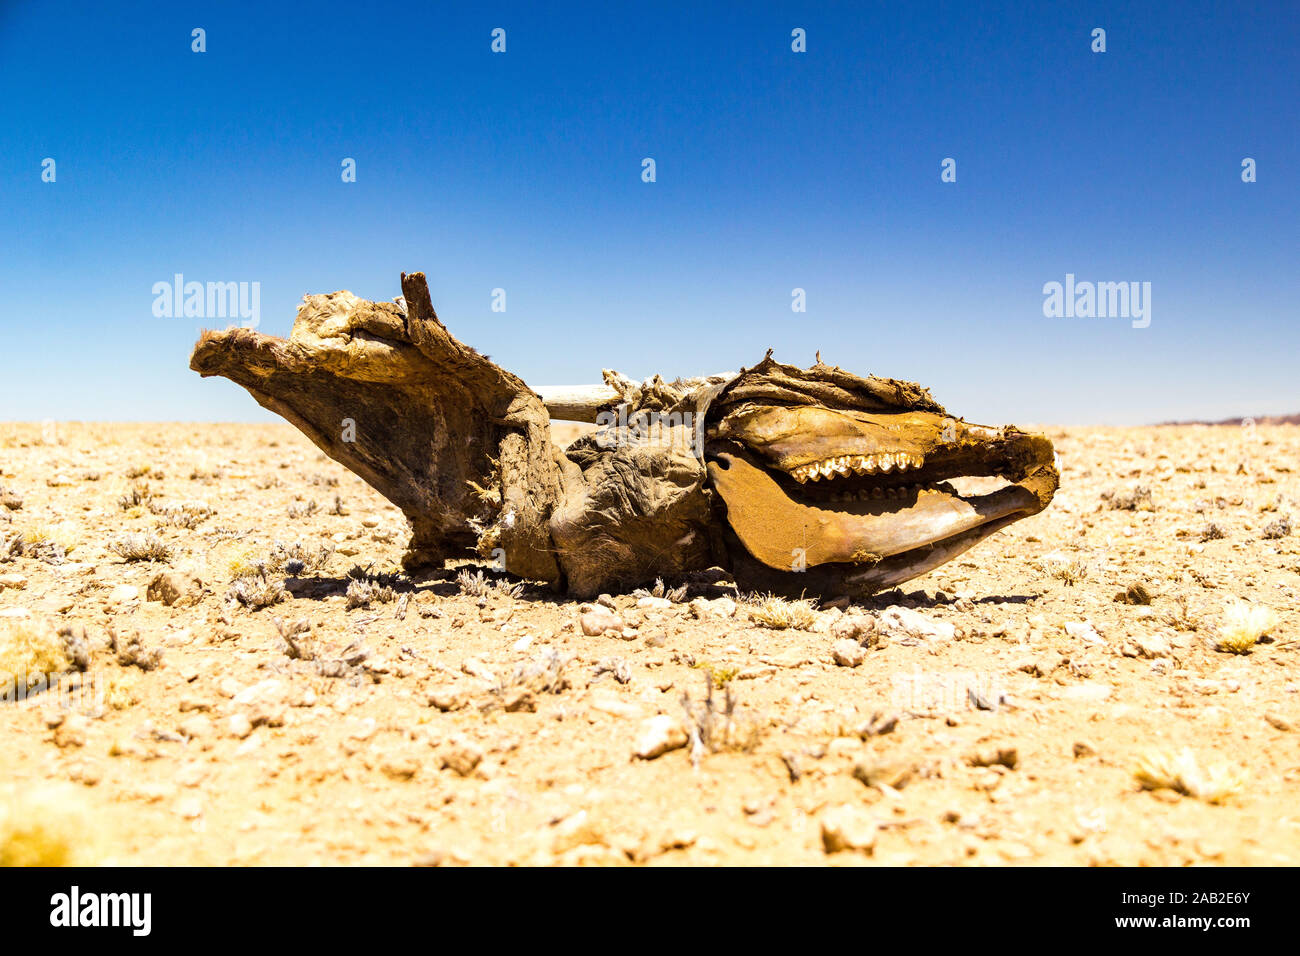 Les os du crâne et d'une antilope oryx, désert du Namib, Namibie, Afrique Banque D'Images